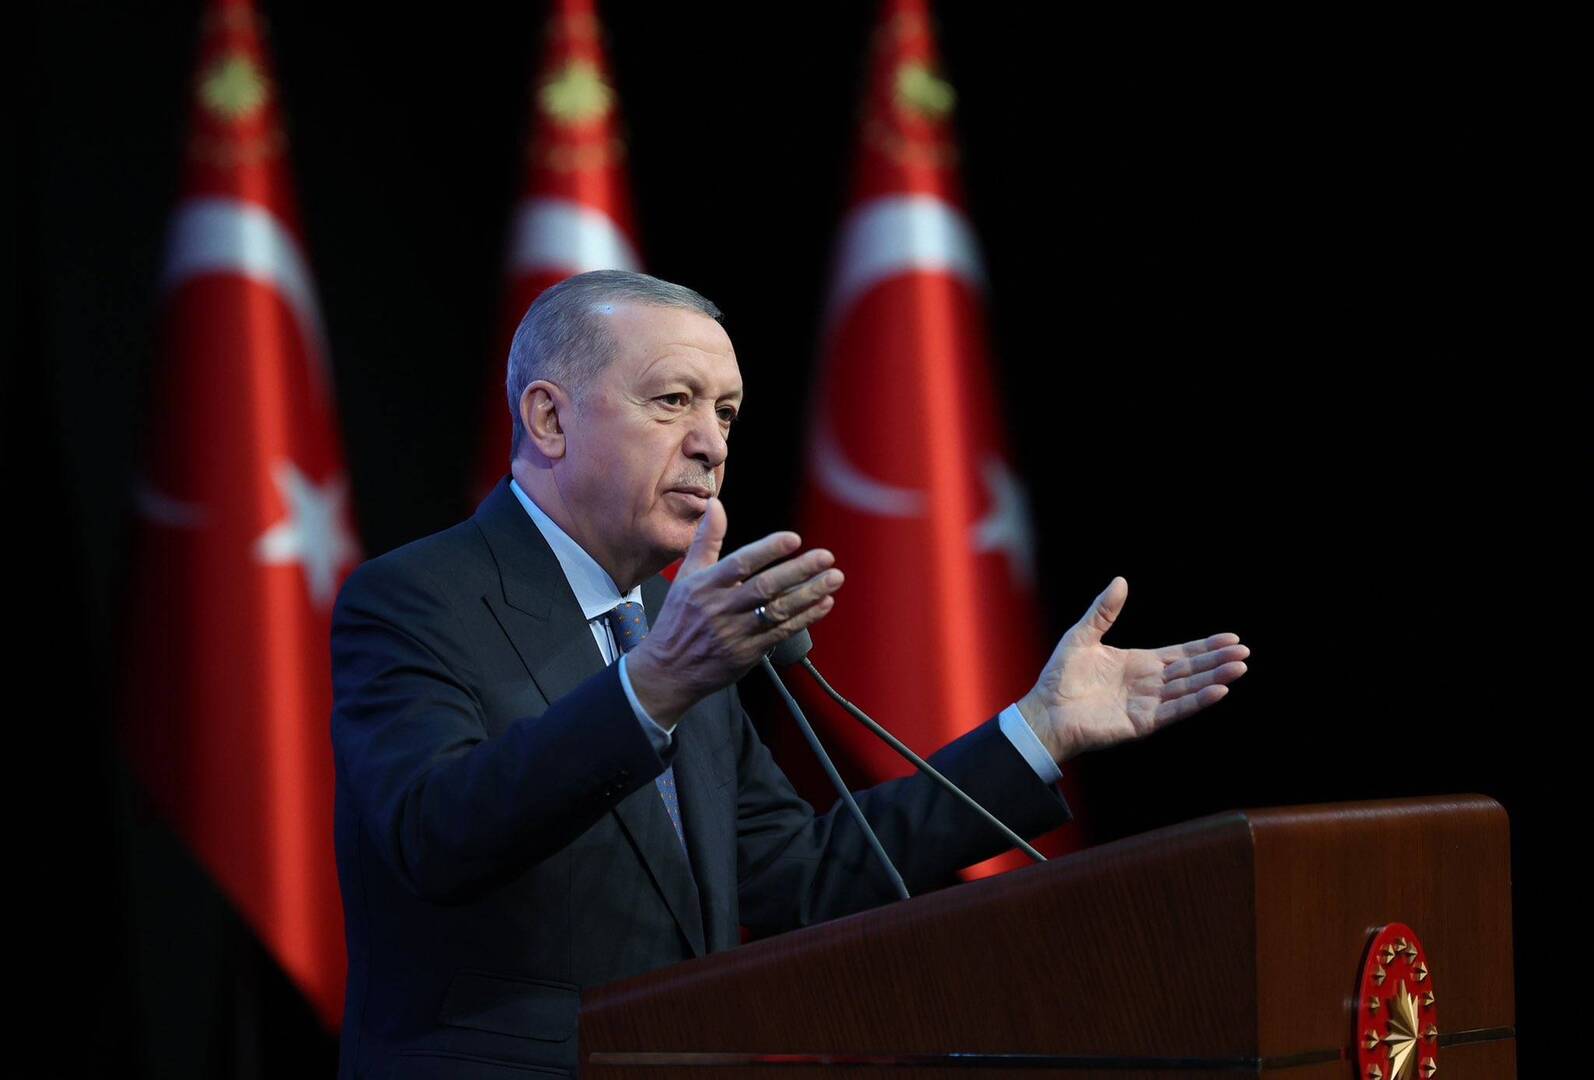 رجب طيب أردوغان، الرئيس التركي